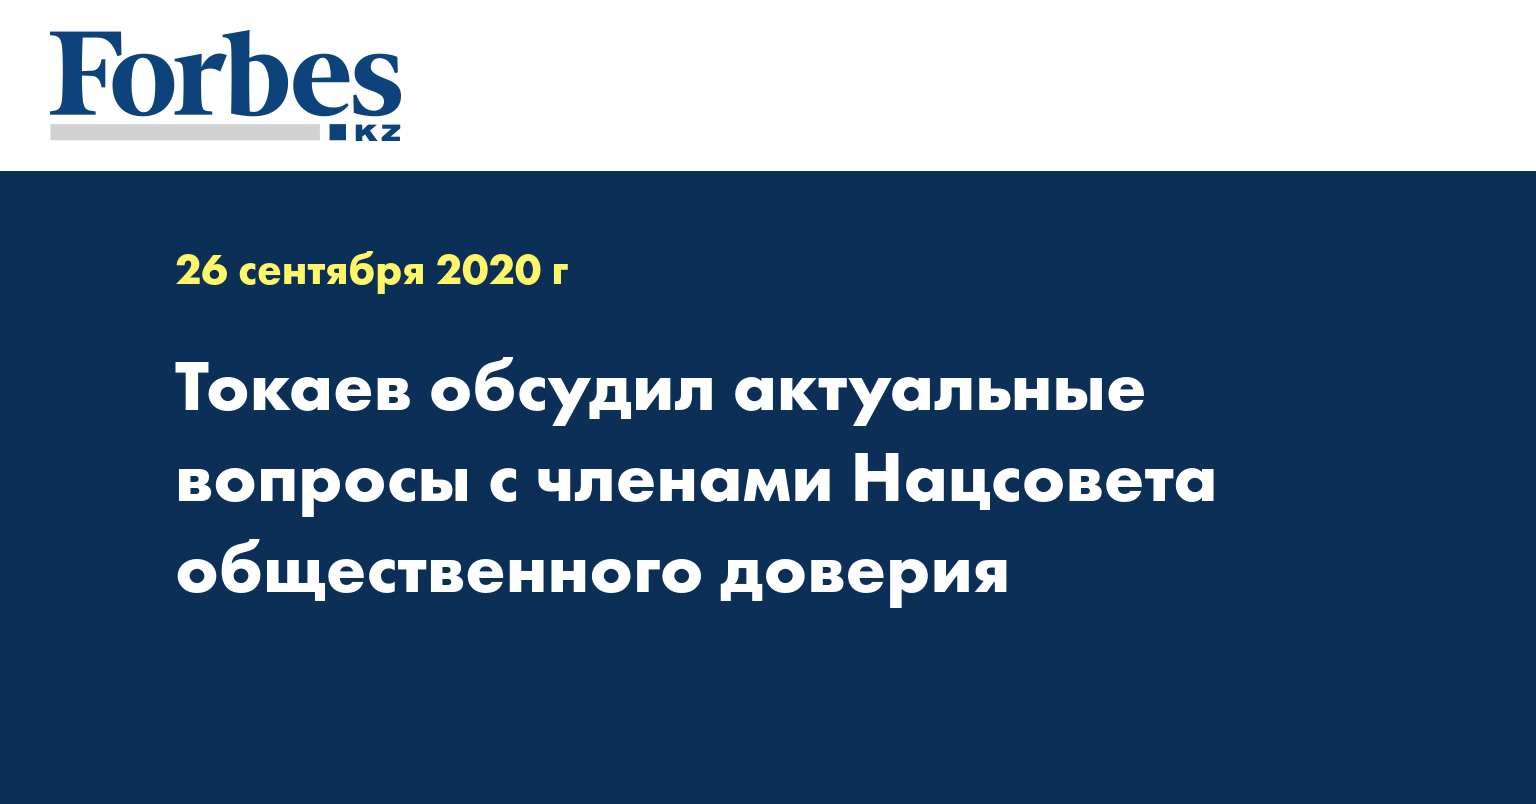  Токаев обсудил актуальные вопросы с членами Нацсовета общественного доверия